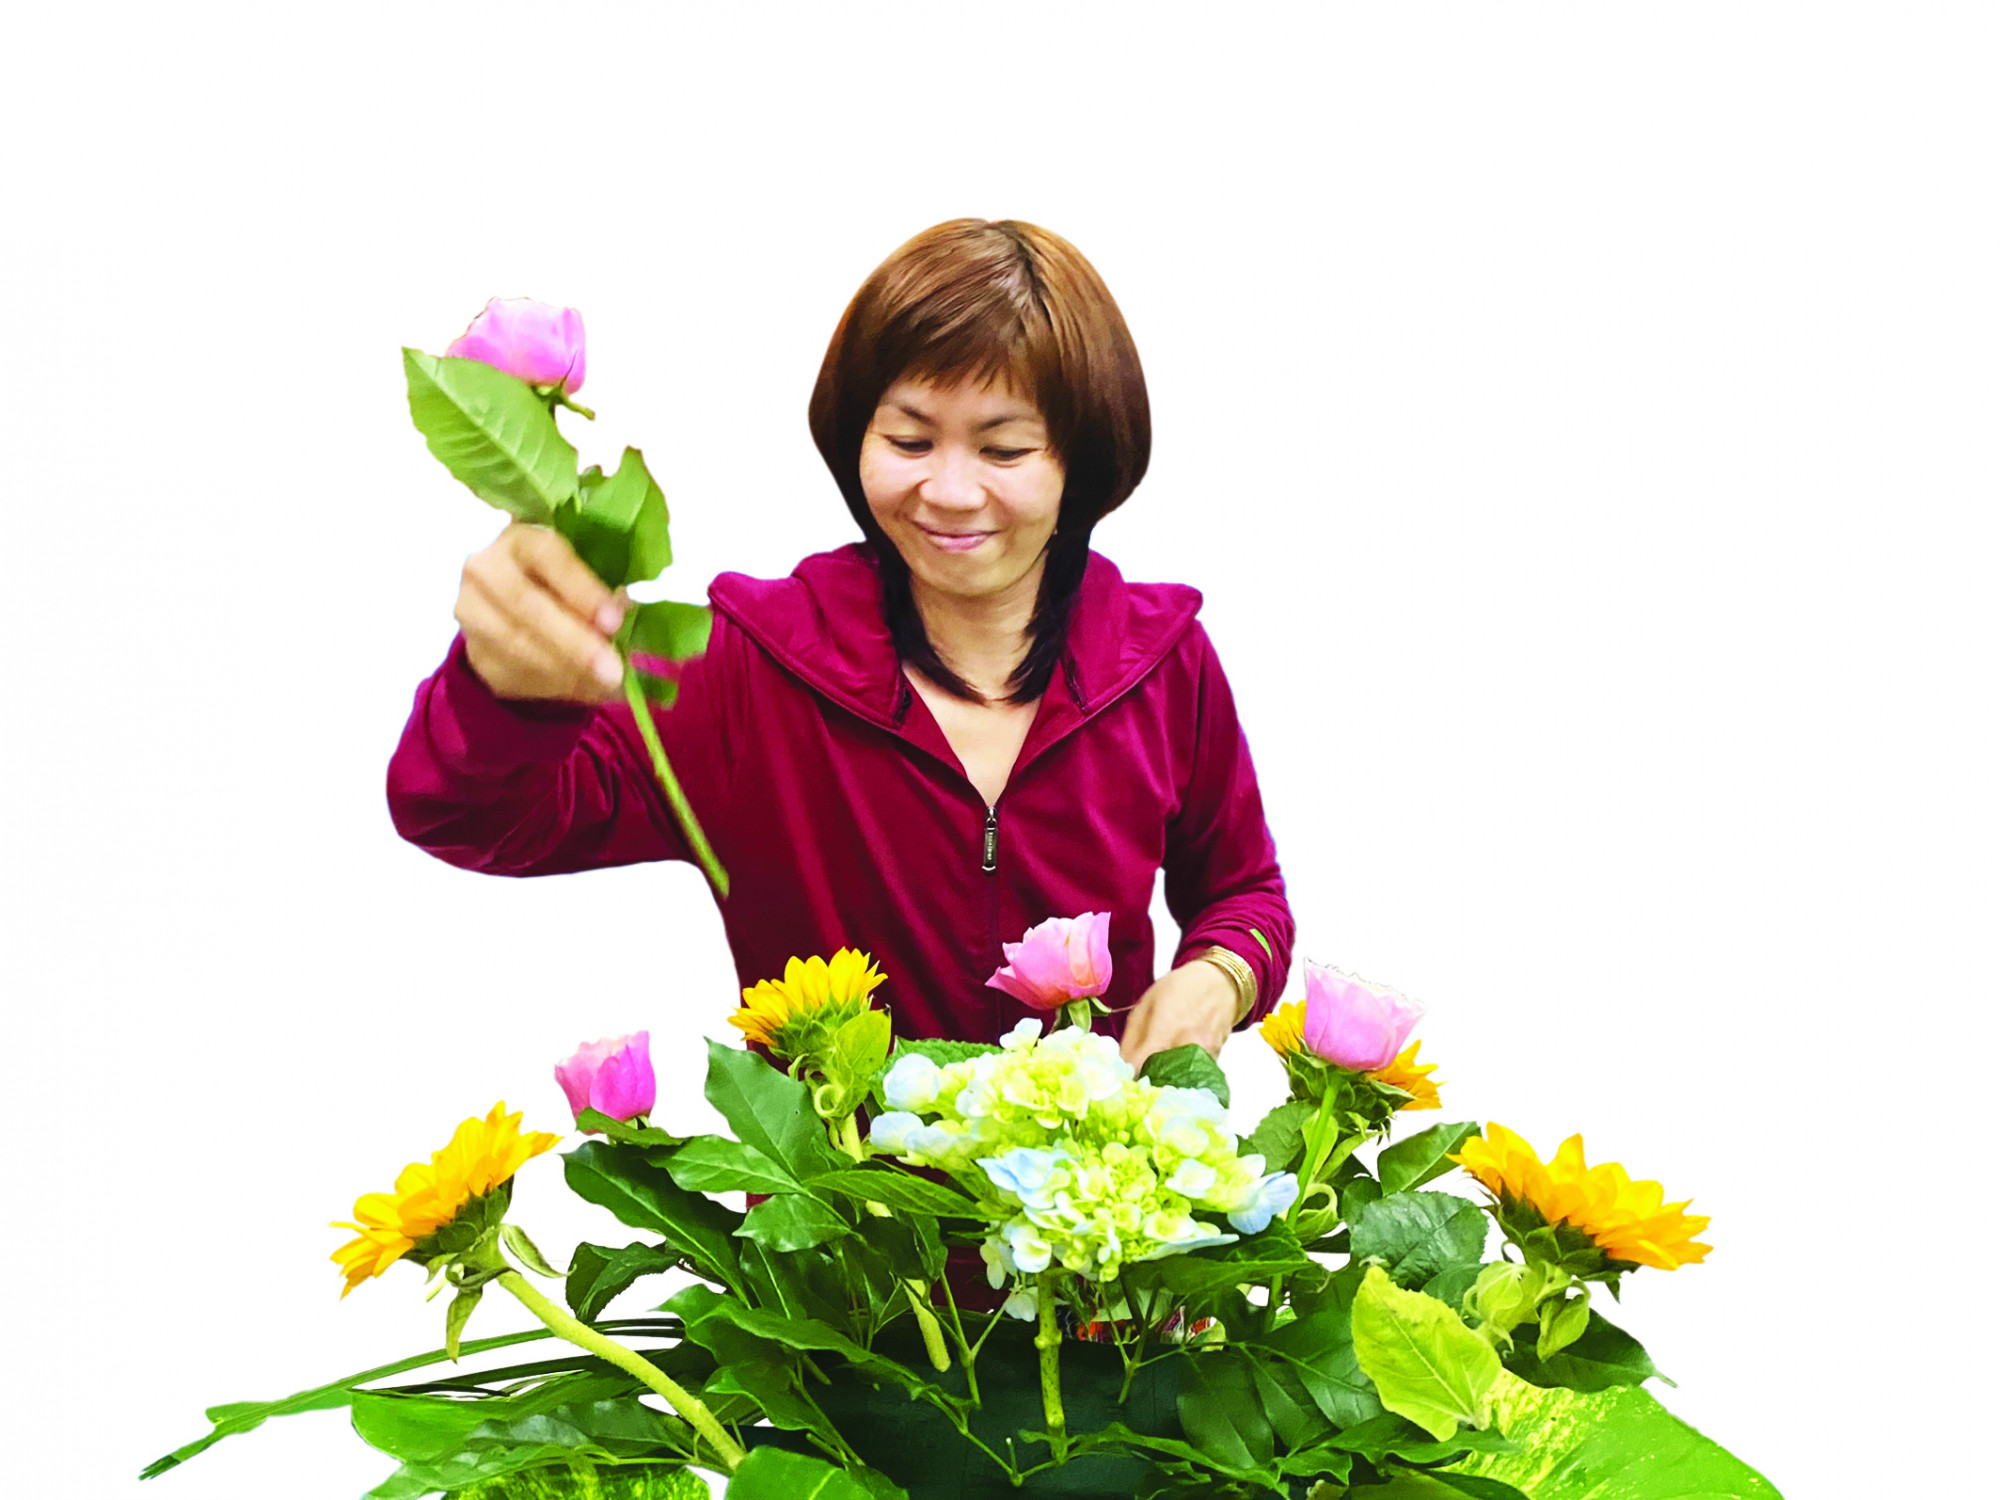 Chị Nguyễn Thị Tuyết thỏa đam mê với công việc cắm hoa